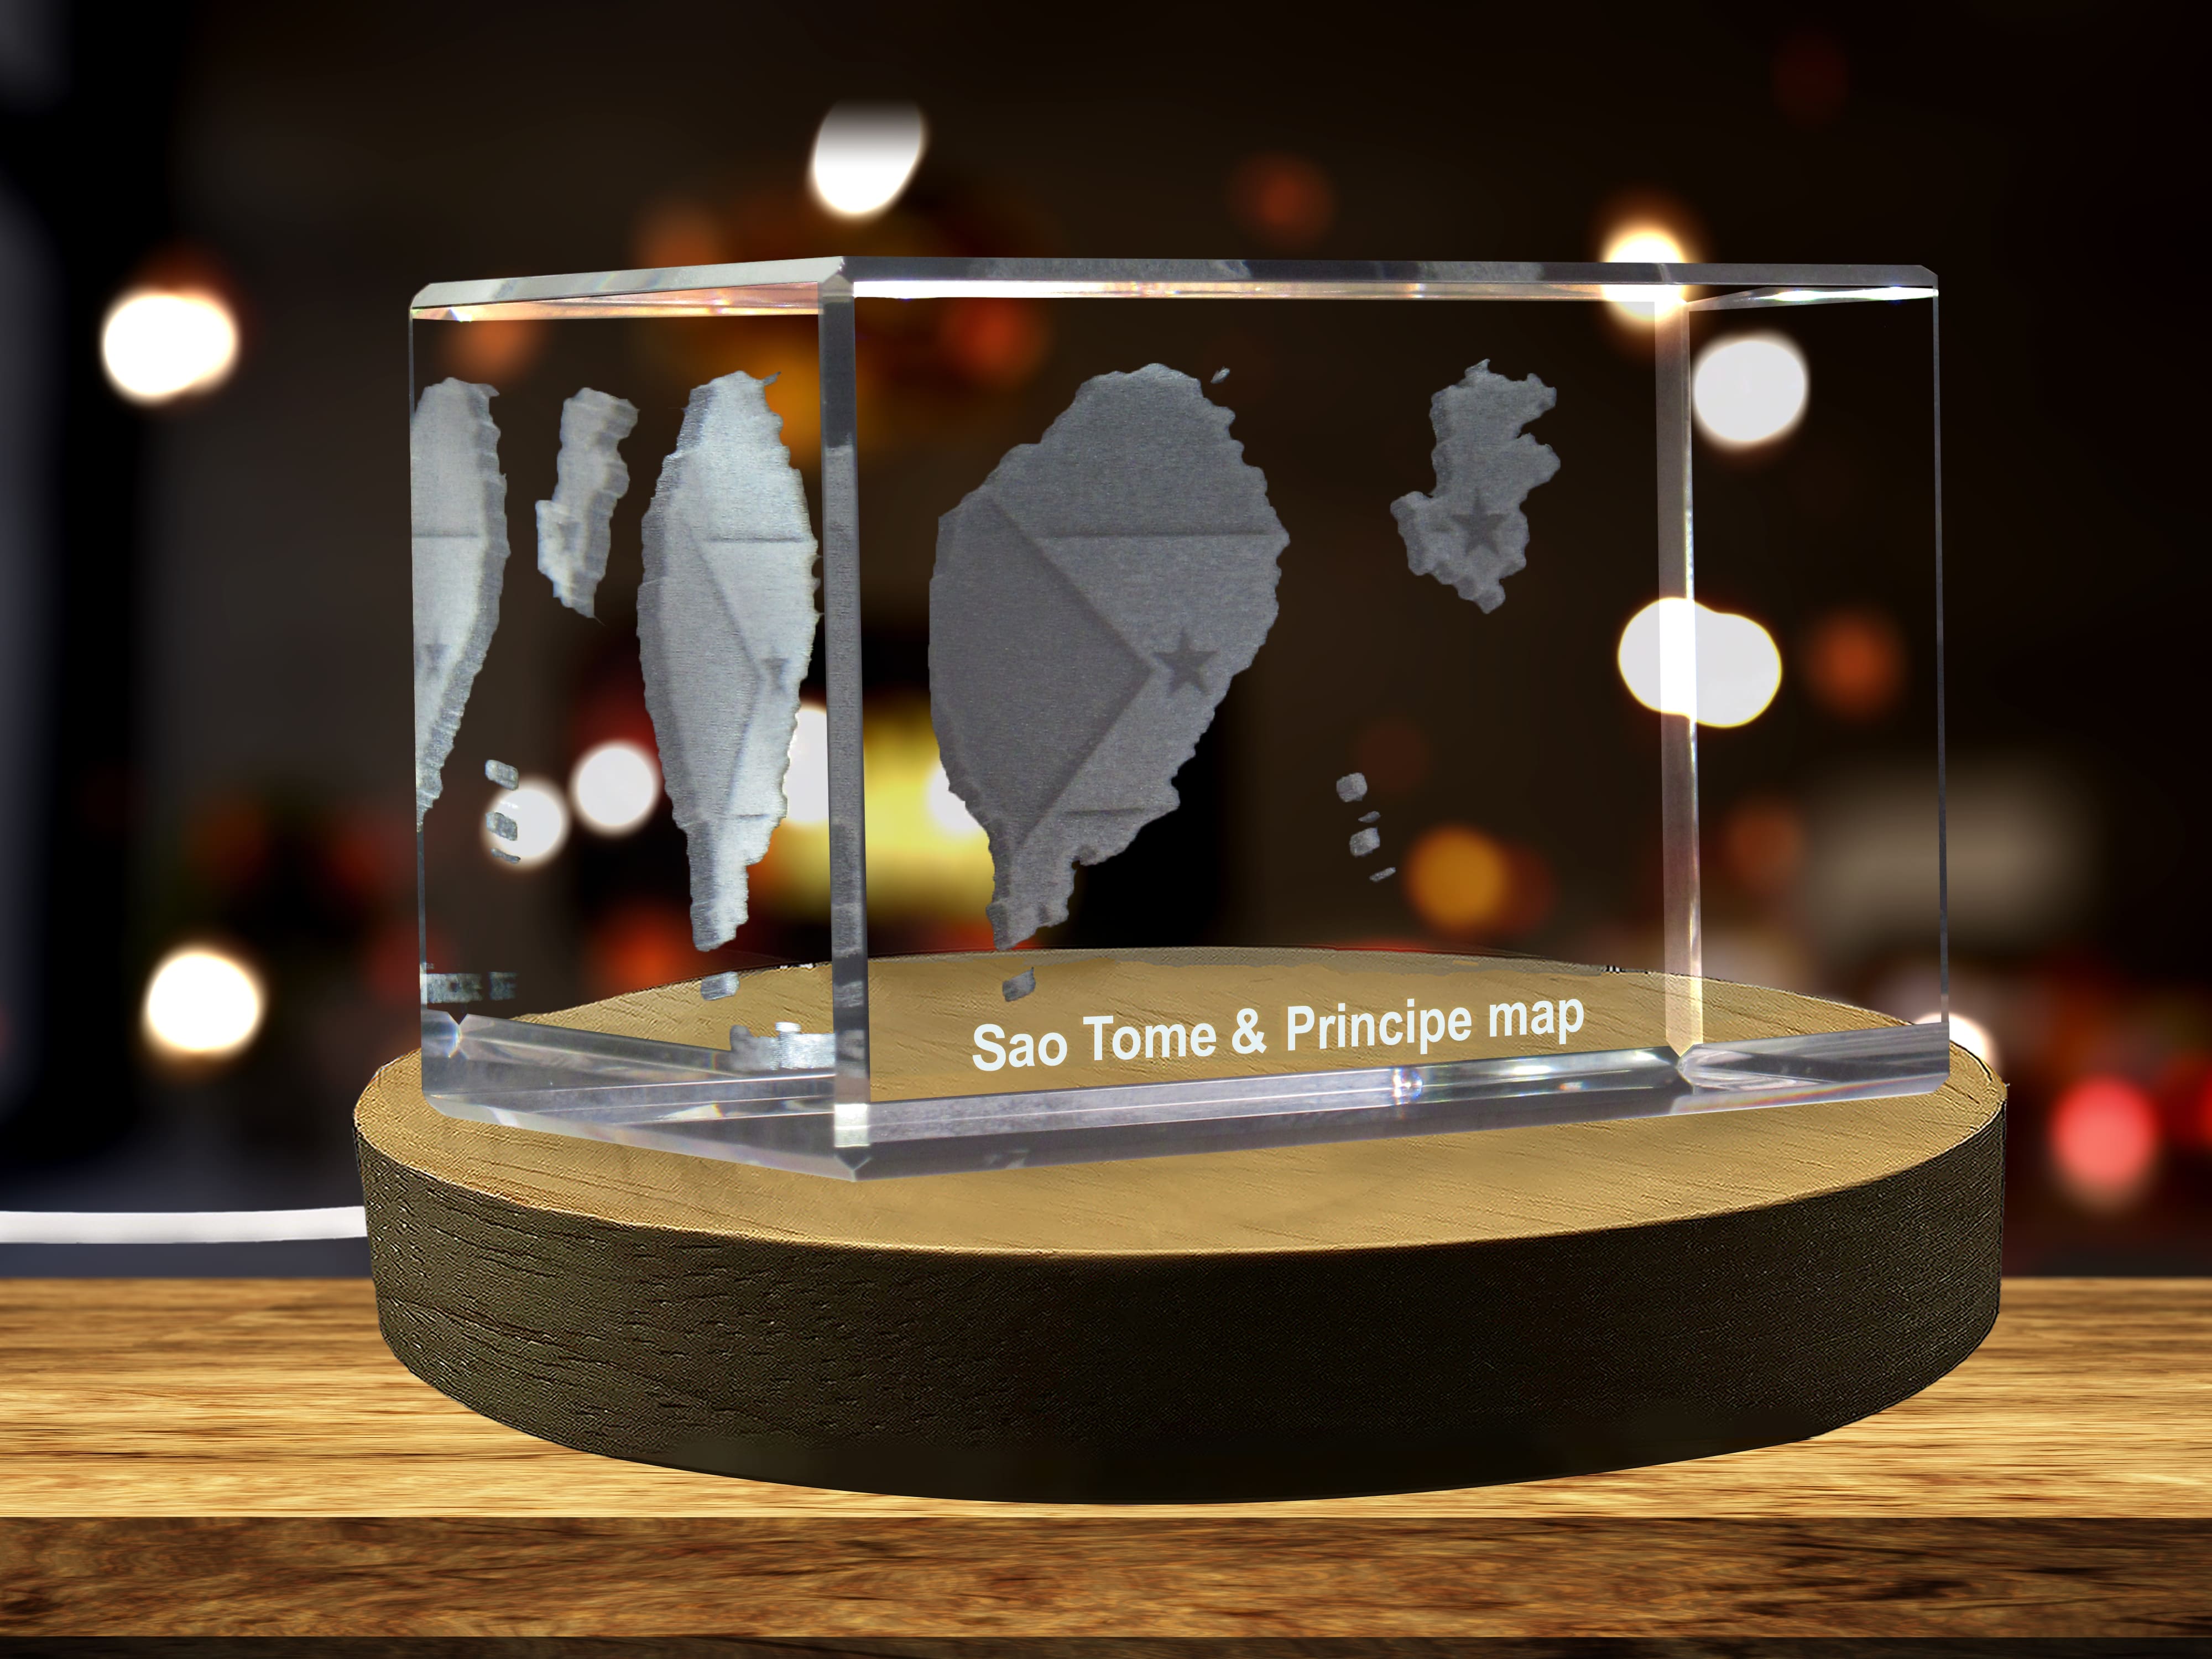 Sao Tome & Principe 3D Engraved Crystal 3D Engraved Crystal Keepsake/Gift/Decor/Collectible/Souvenir A&B Crystal Collection